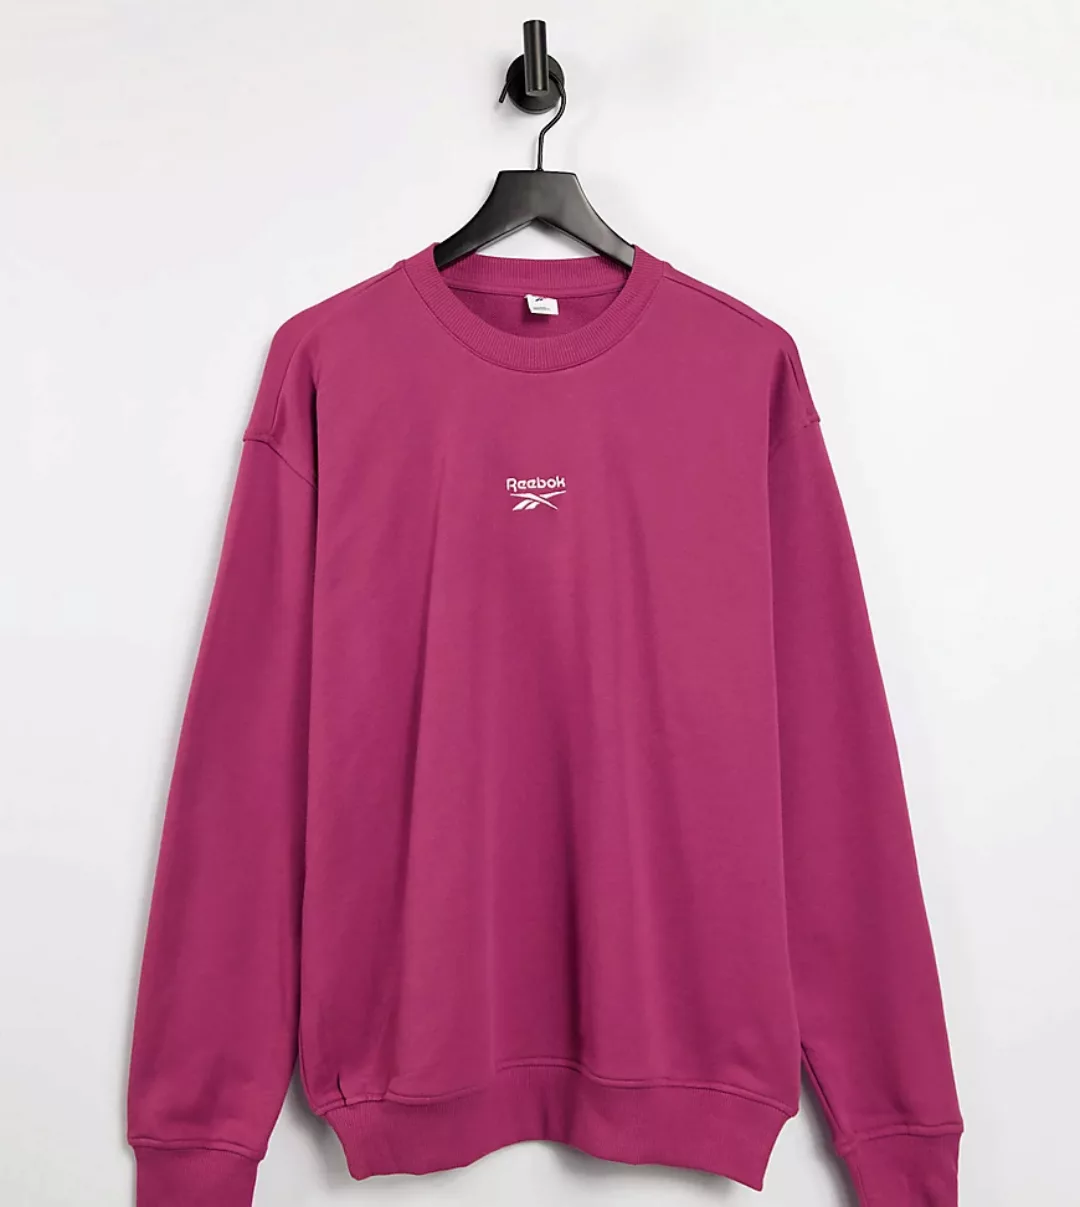 Reebok – Sweatshirt in Boyfriend-Passform mit Logo in Lila, exklusiv bei AS günstig online kaufen